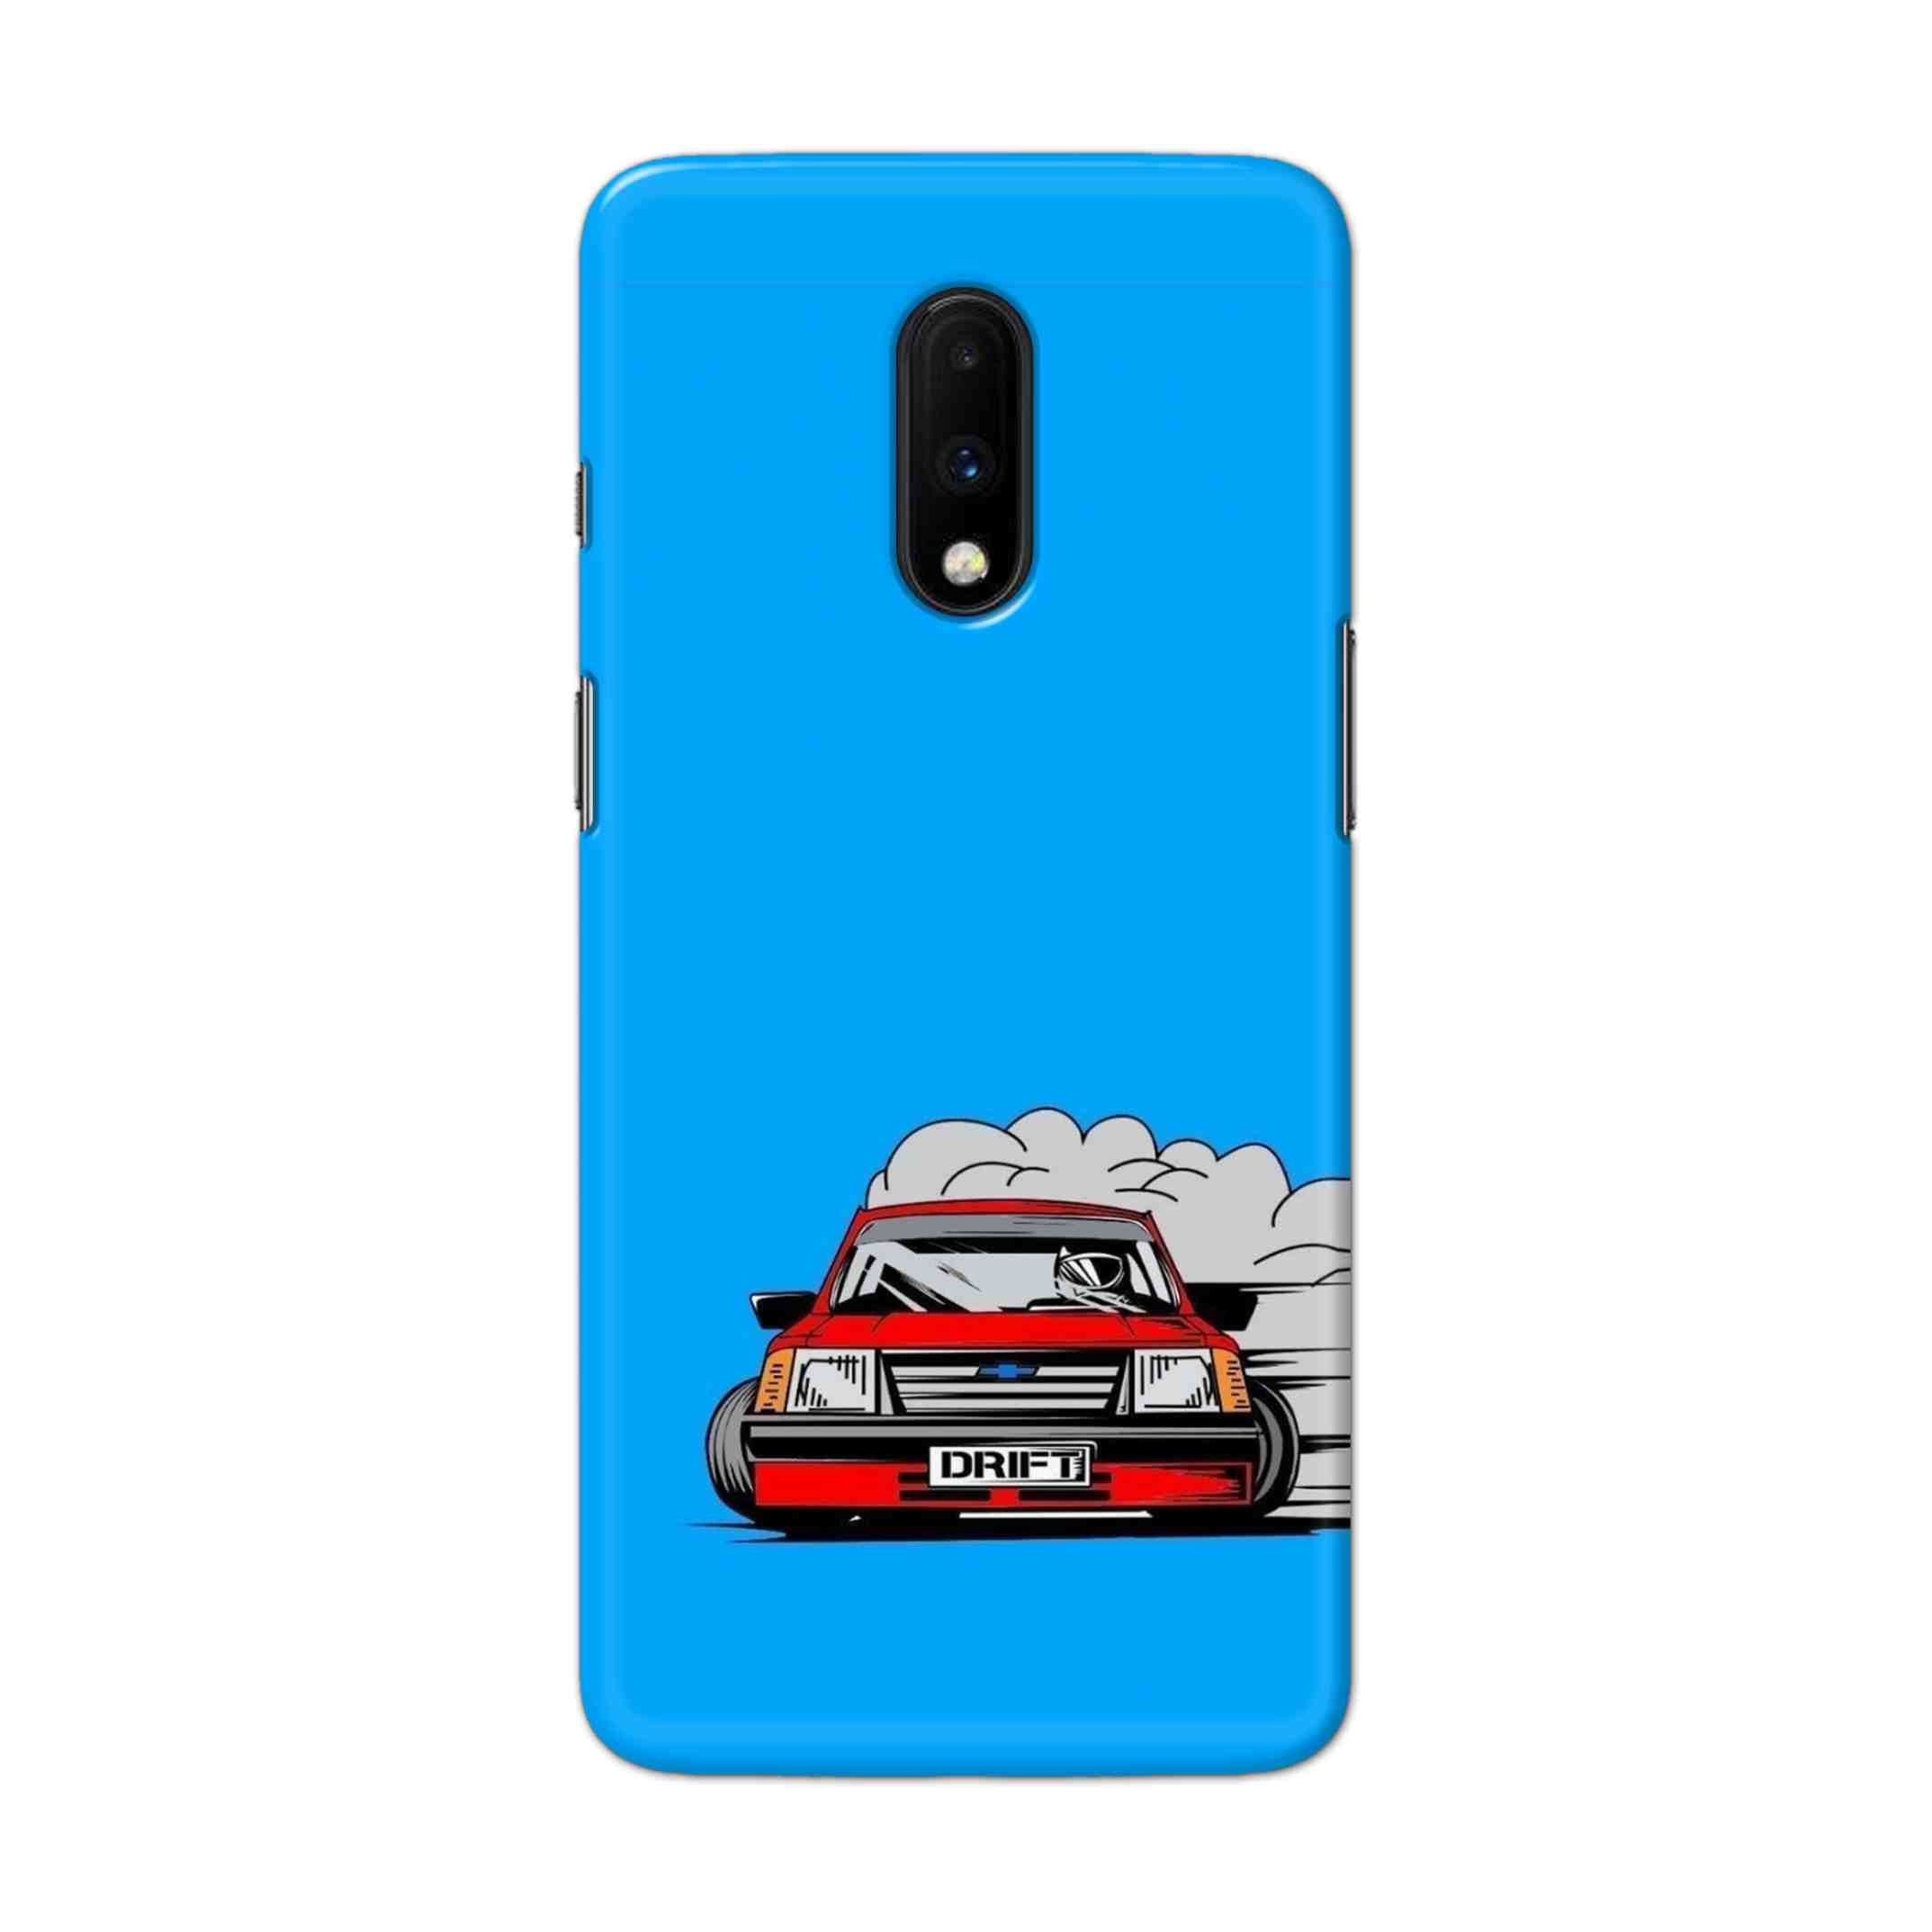 Buy Drift Hard Back Mobile Phone Case Cover For OnePlus 7 Online